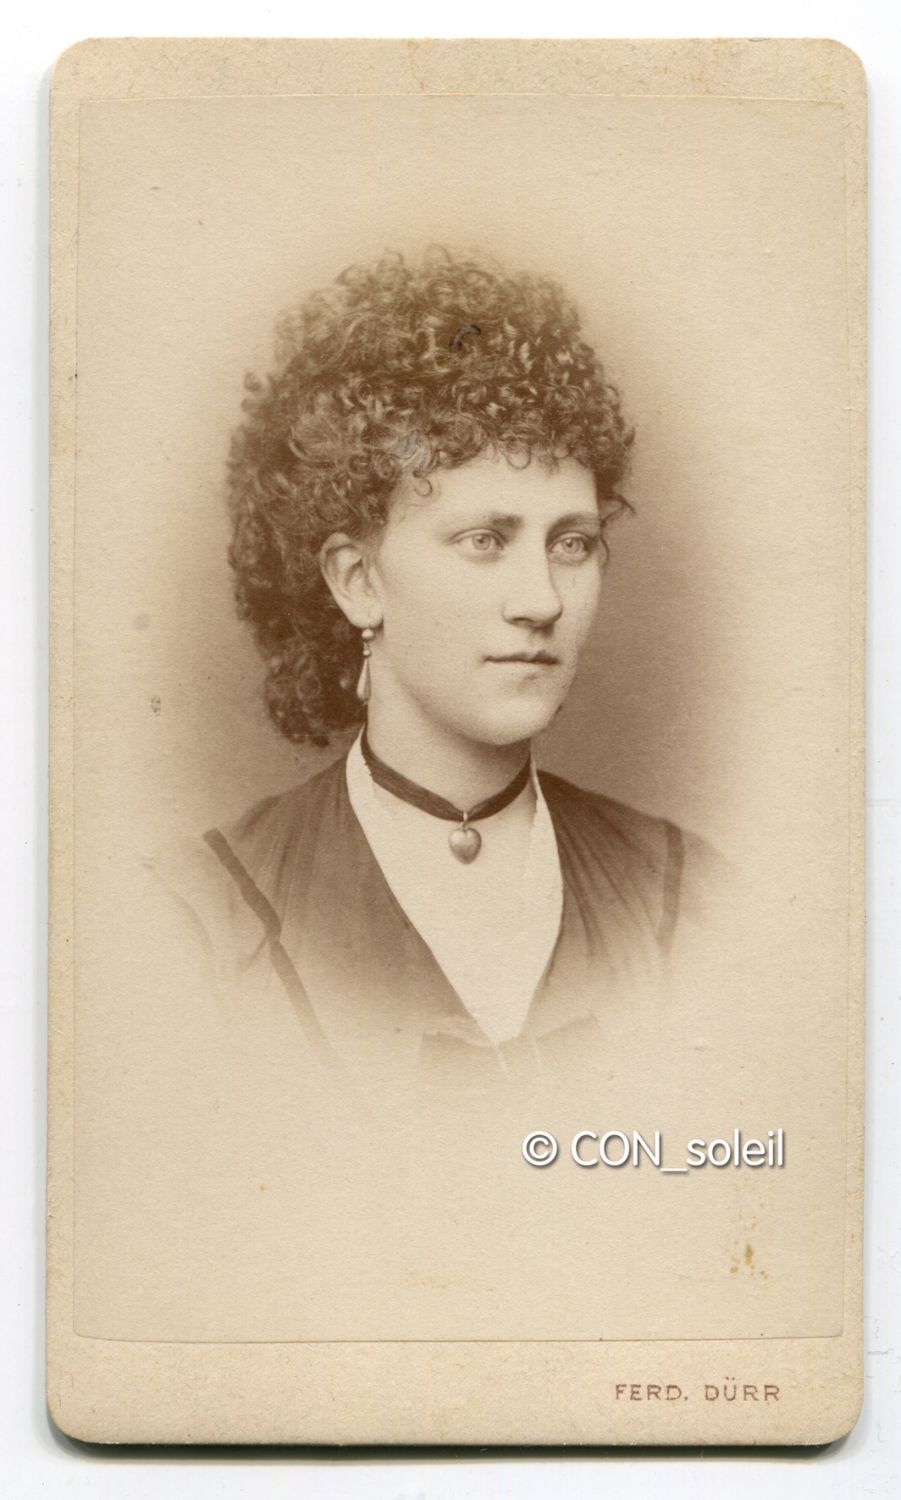 1873 ondulierte haare halsband